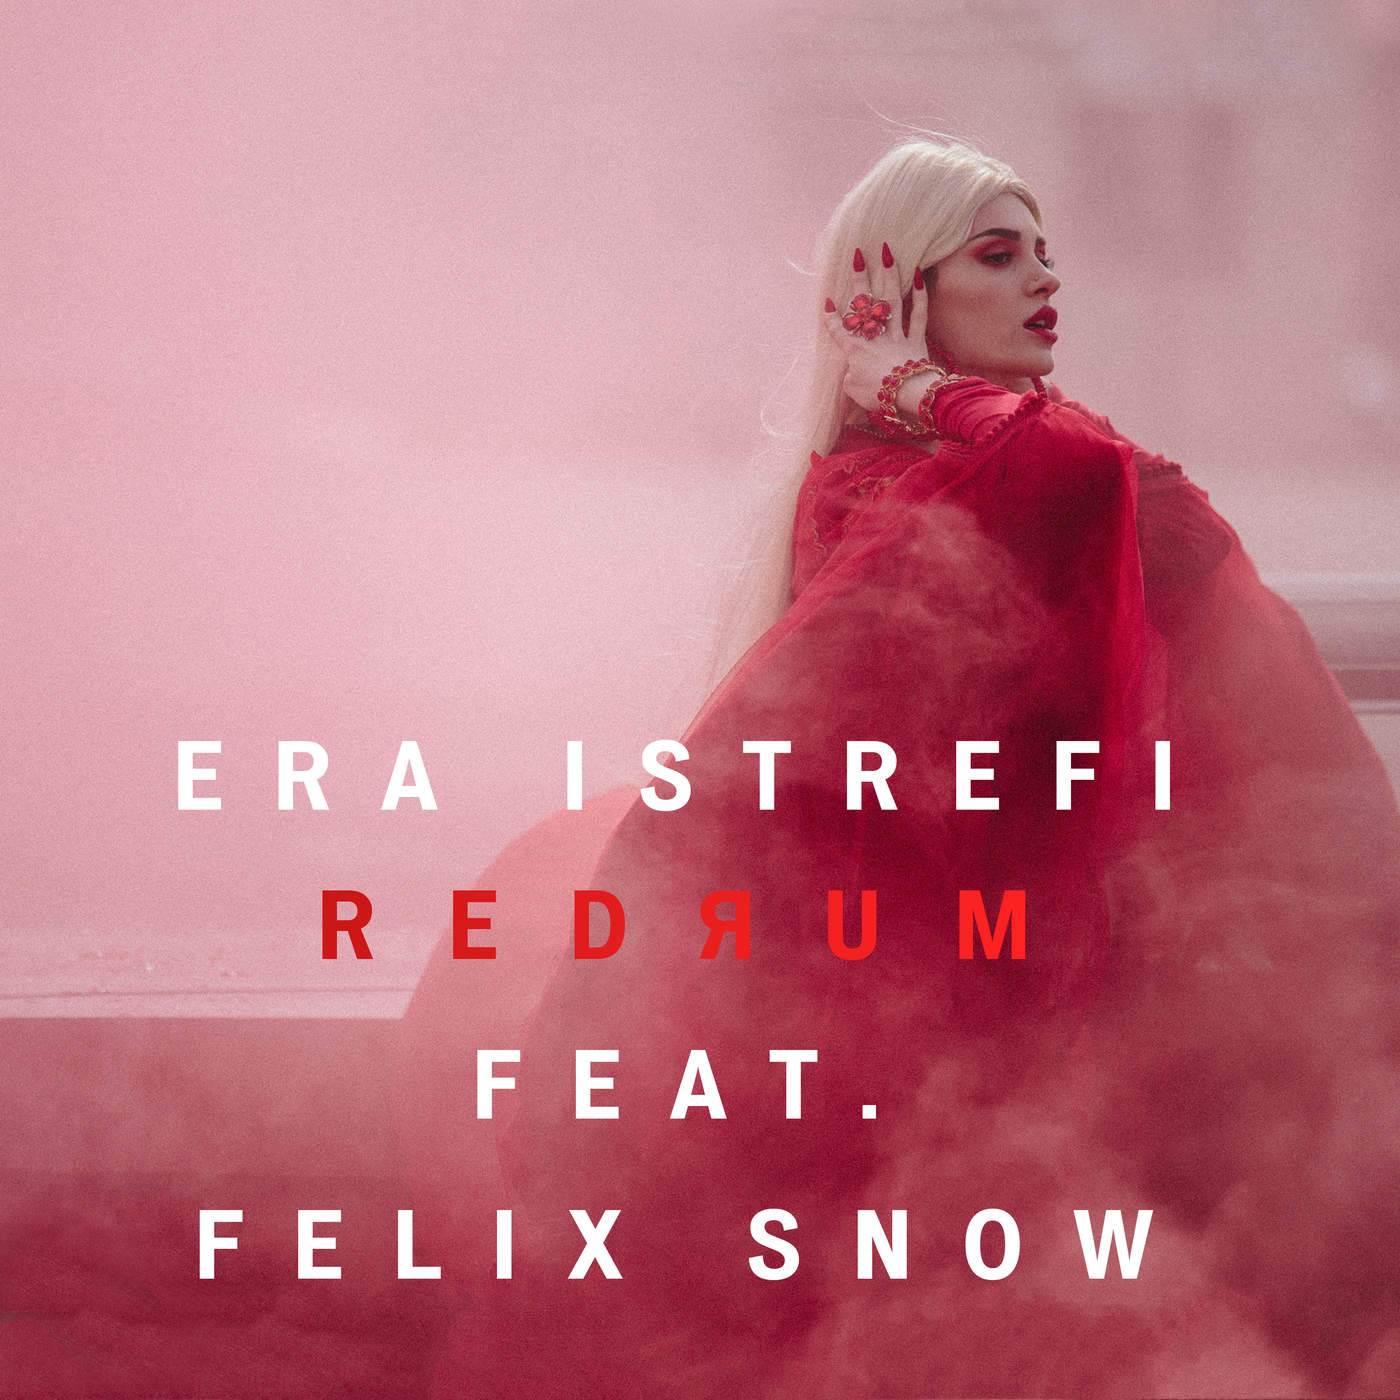 آهنگ redrum از era Istrefi feat felix snow